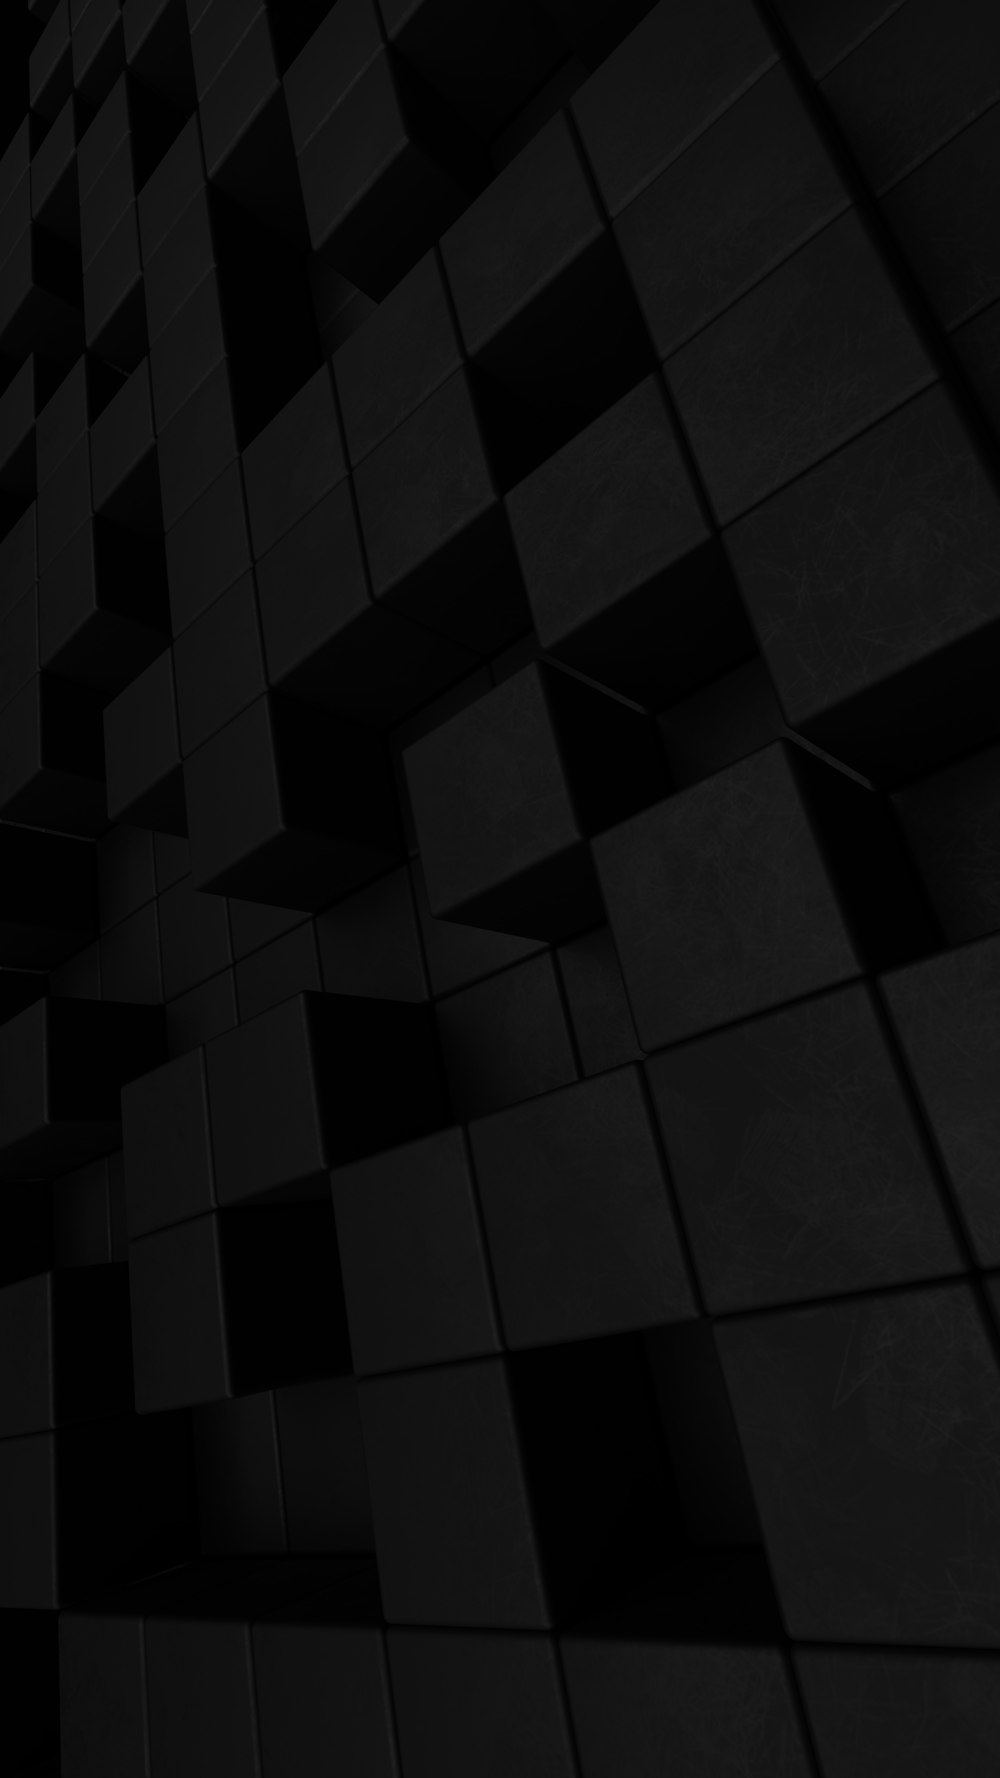 Una foto en blanco y negro de una pared hecha de cubos